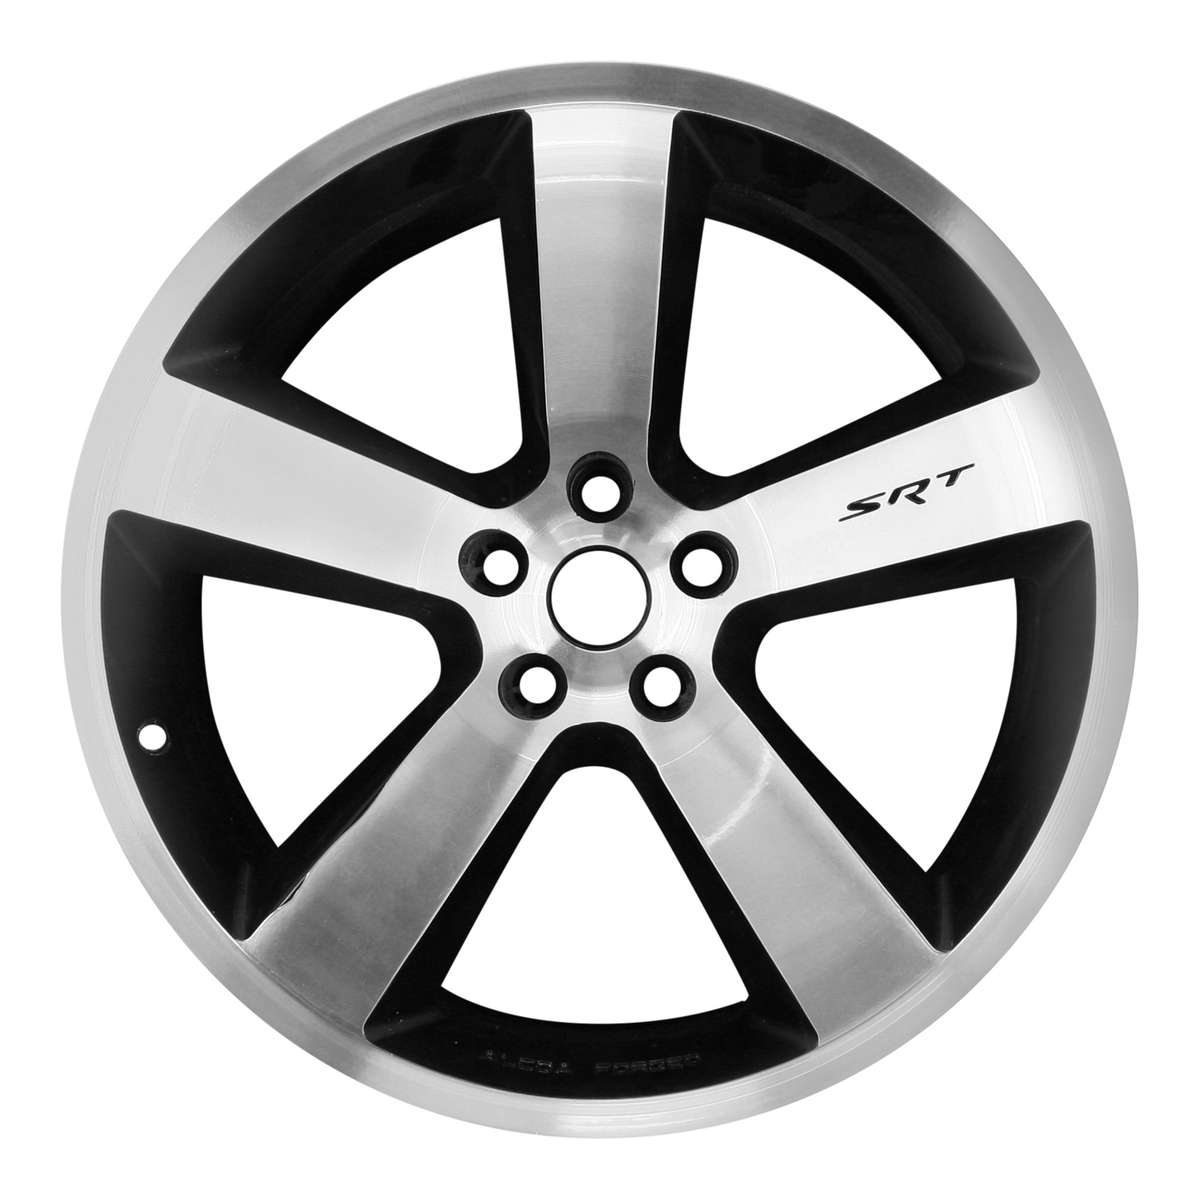 2011 Dodge Challenger 20" OEM Wheel Rim SRT Black W2425MB